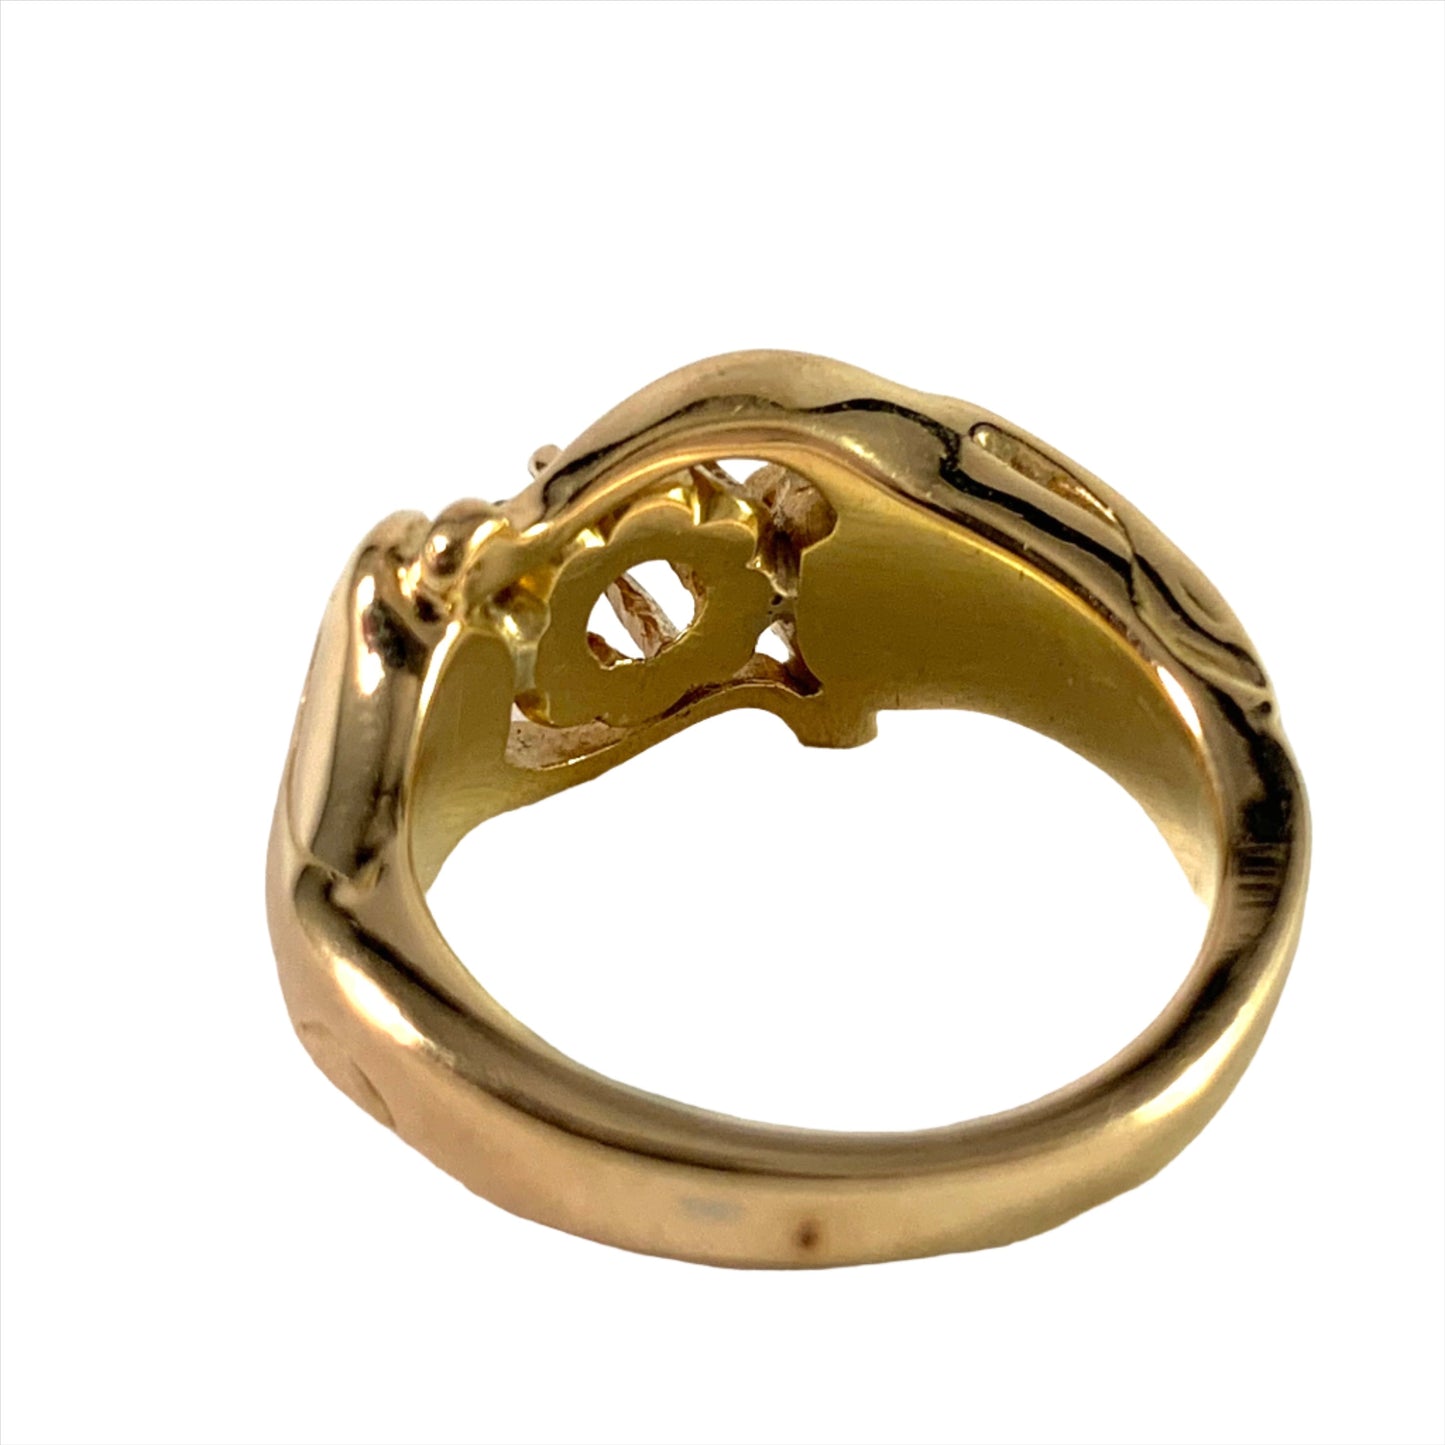 Garmland, Sweden year 1950 Vintage 18k Gold 0.23ct Diamond Ring. 9.15gram